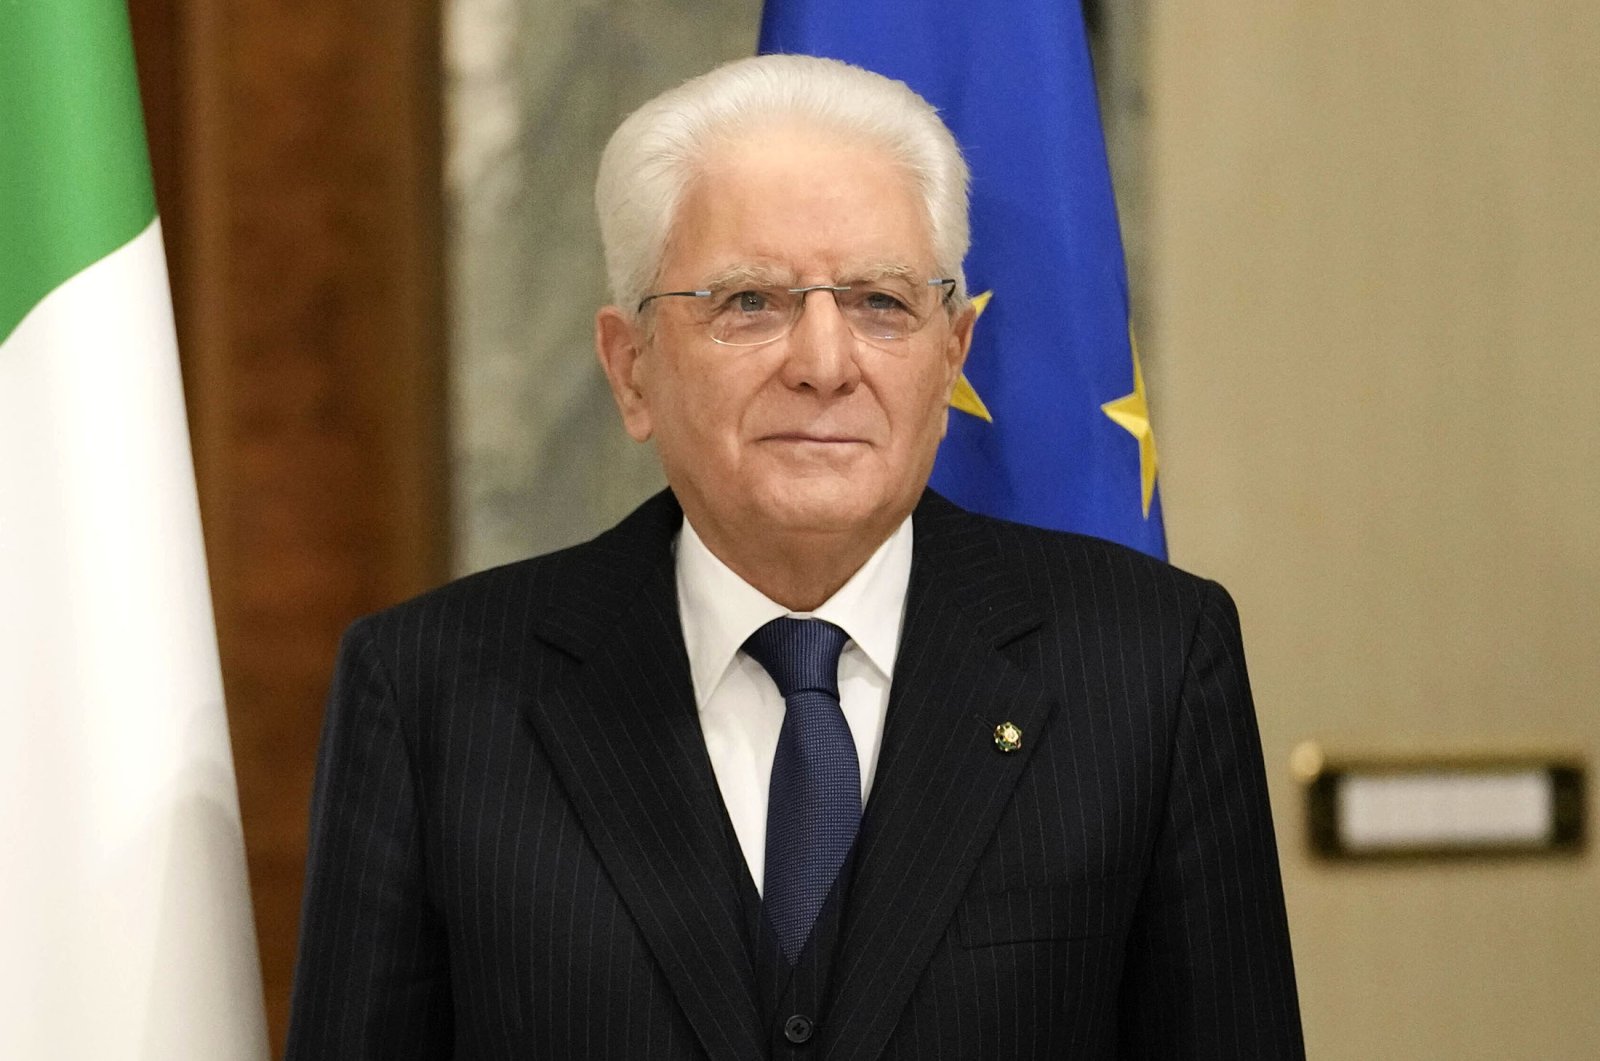 Hidup presiden: Mattarella dari Italia setuju untuk masa jabatan kedua